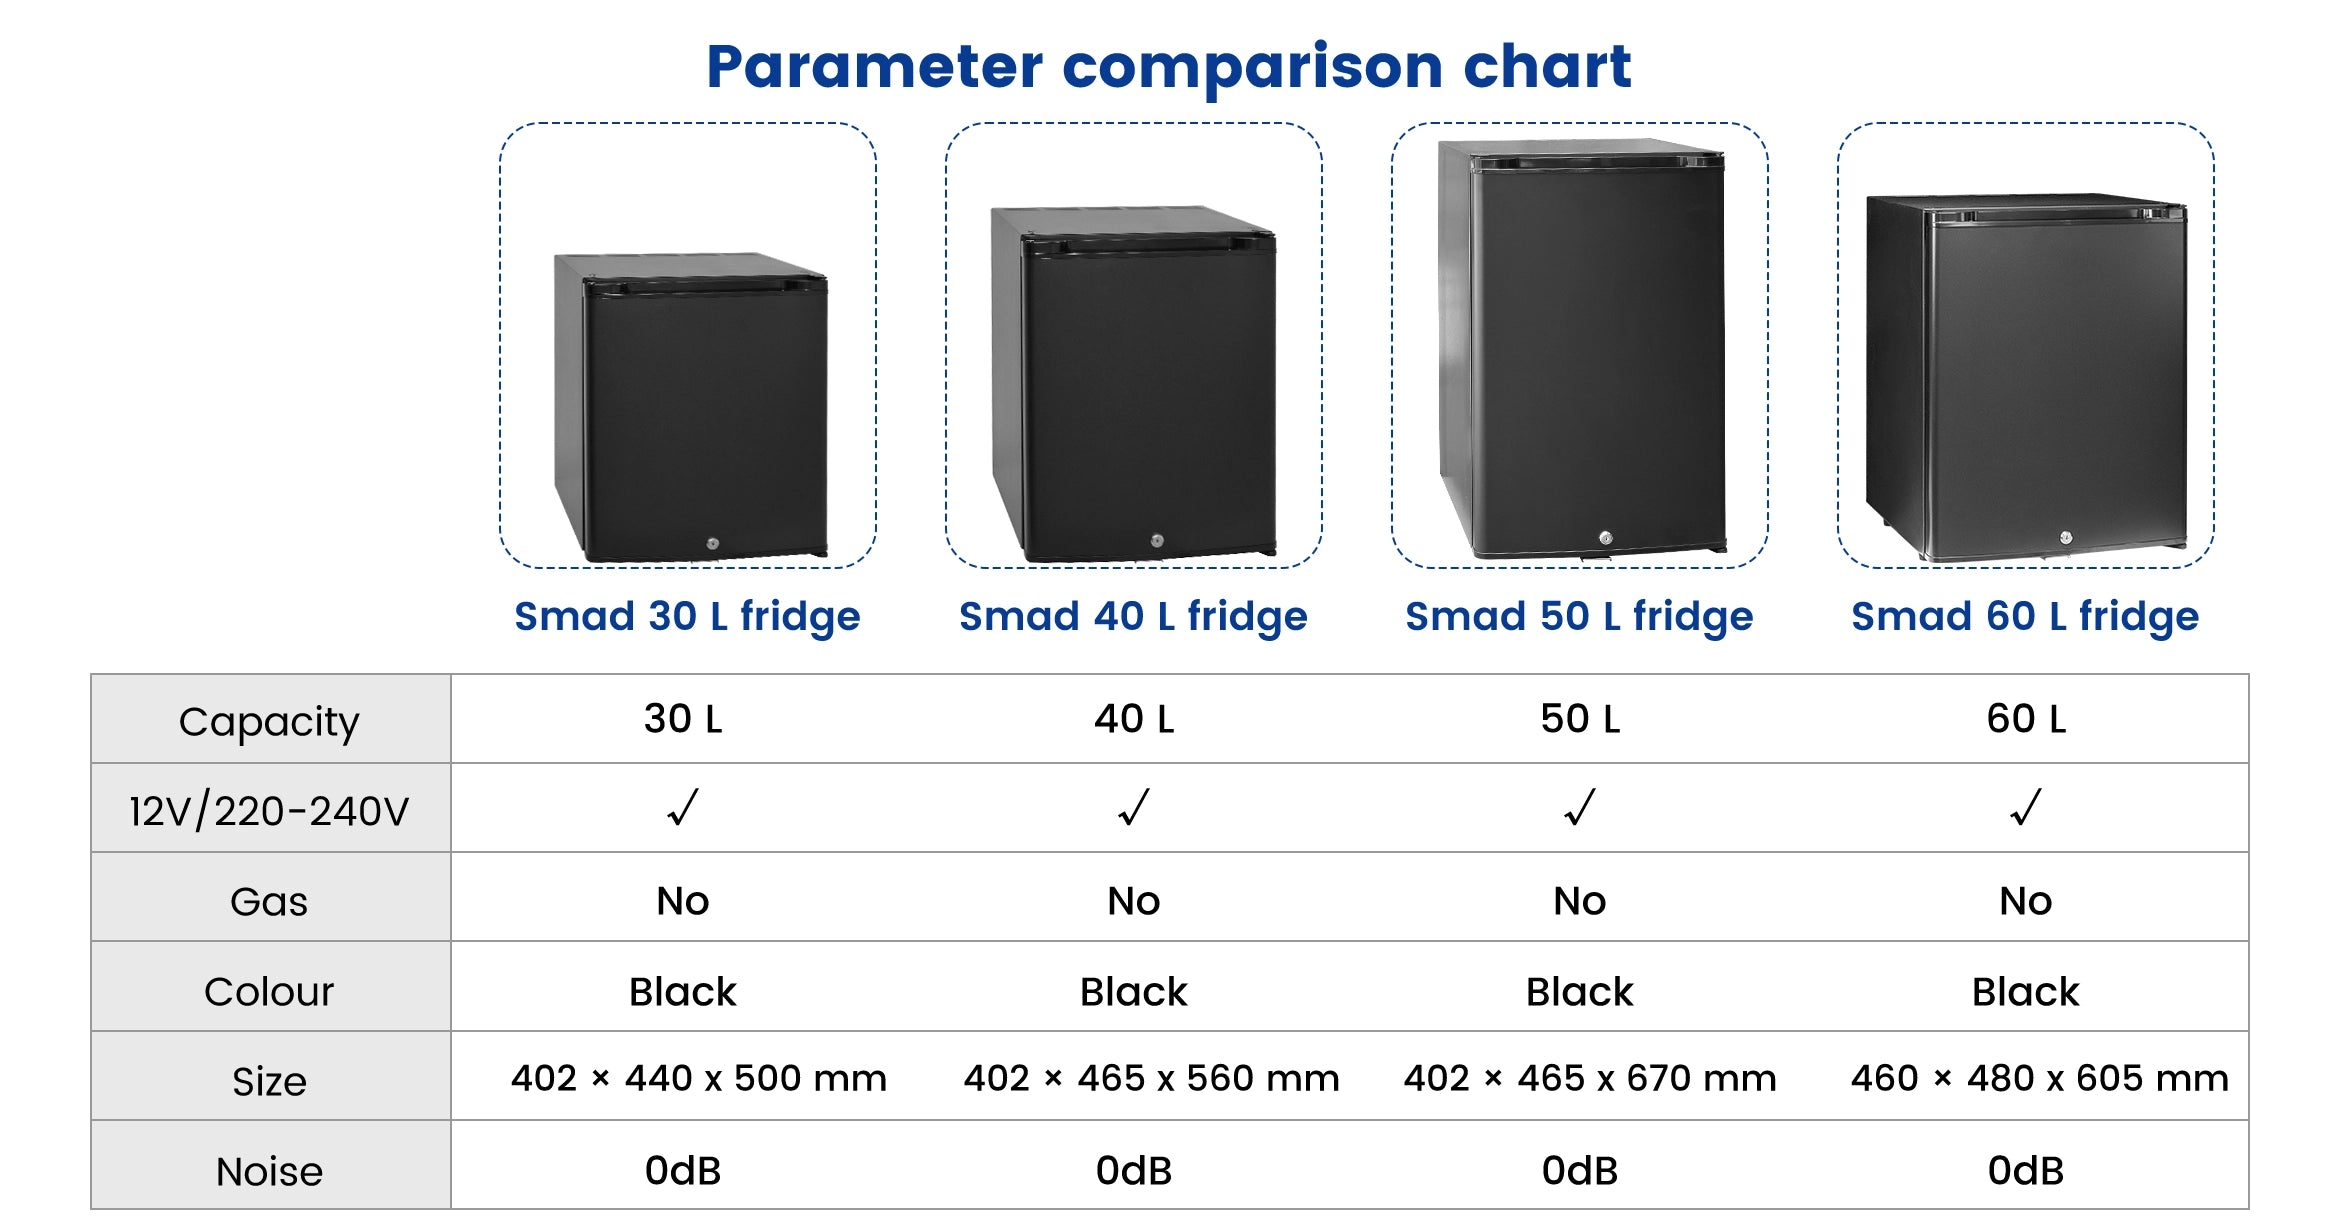 DSX-30L Parameter comparison chart